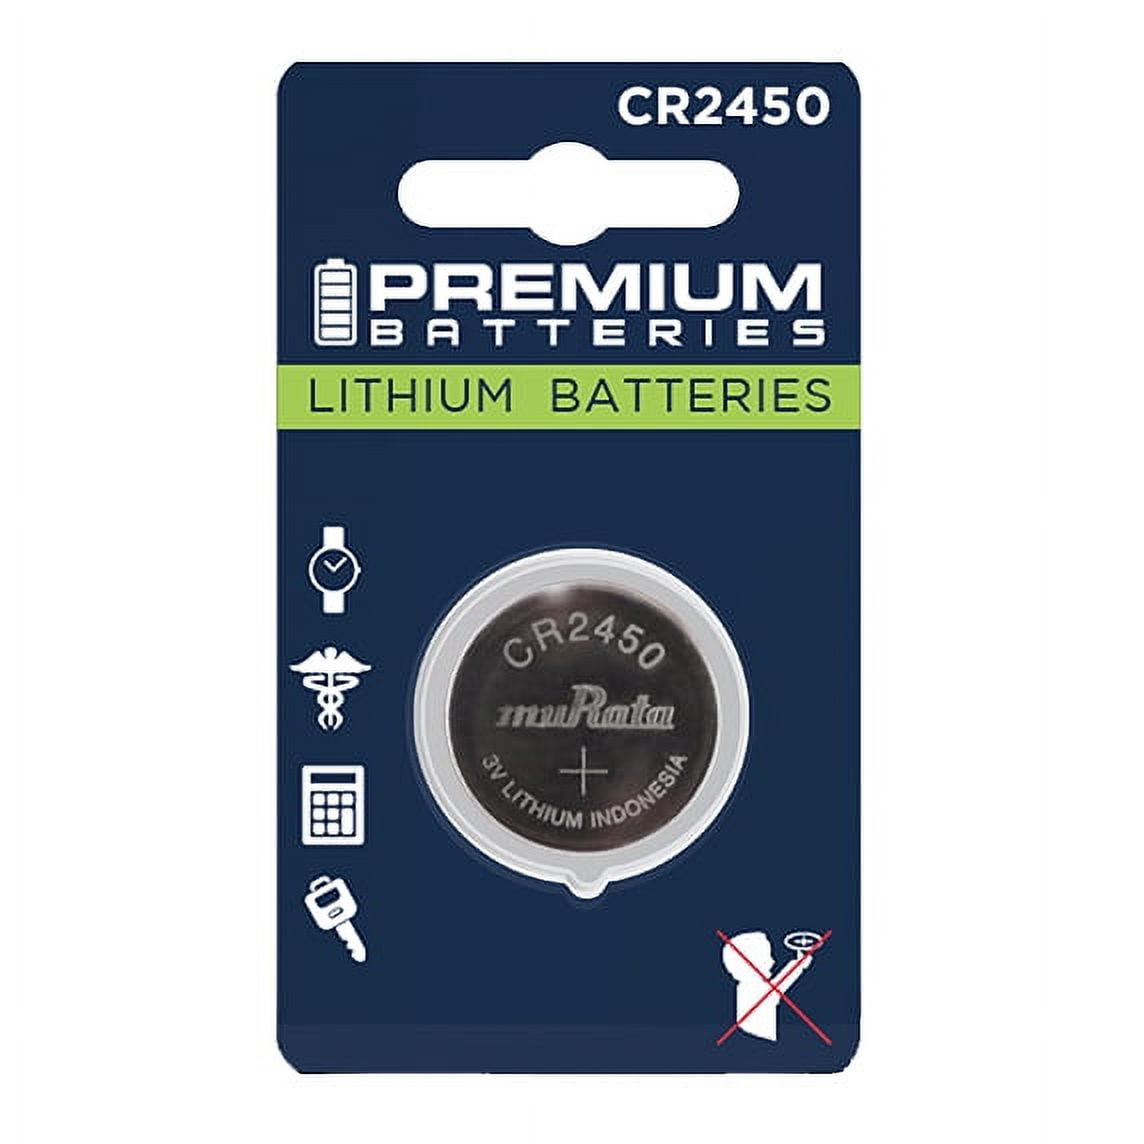 50 NEW MURATA CR2450 3V Lithium Coin Battery Expire 2027 FRESHLY NEW - USA  Seller 